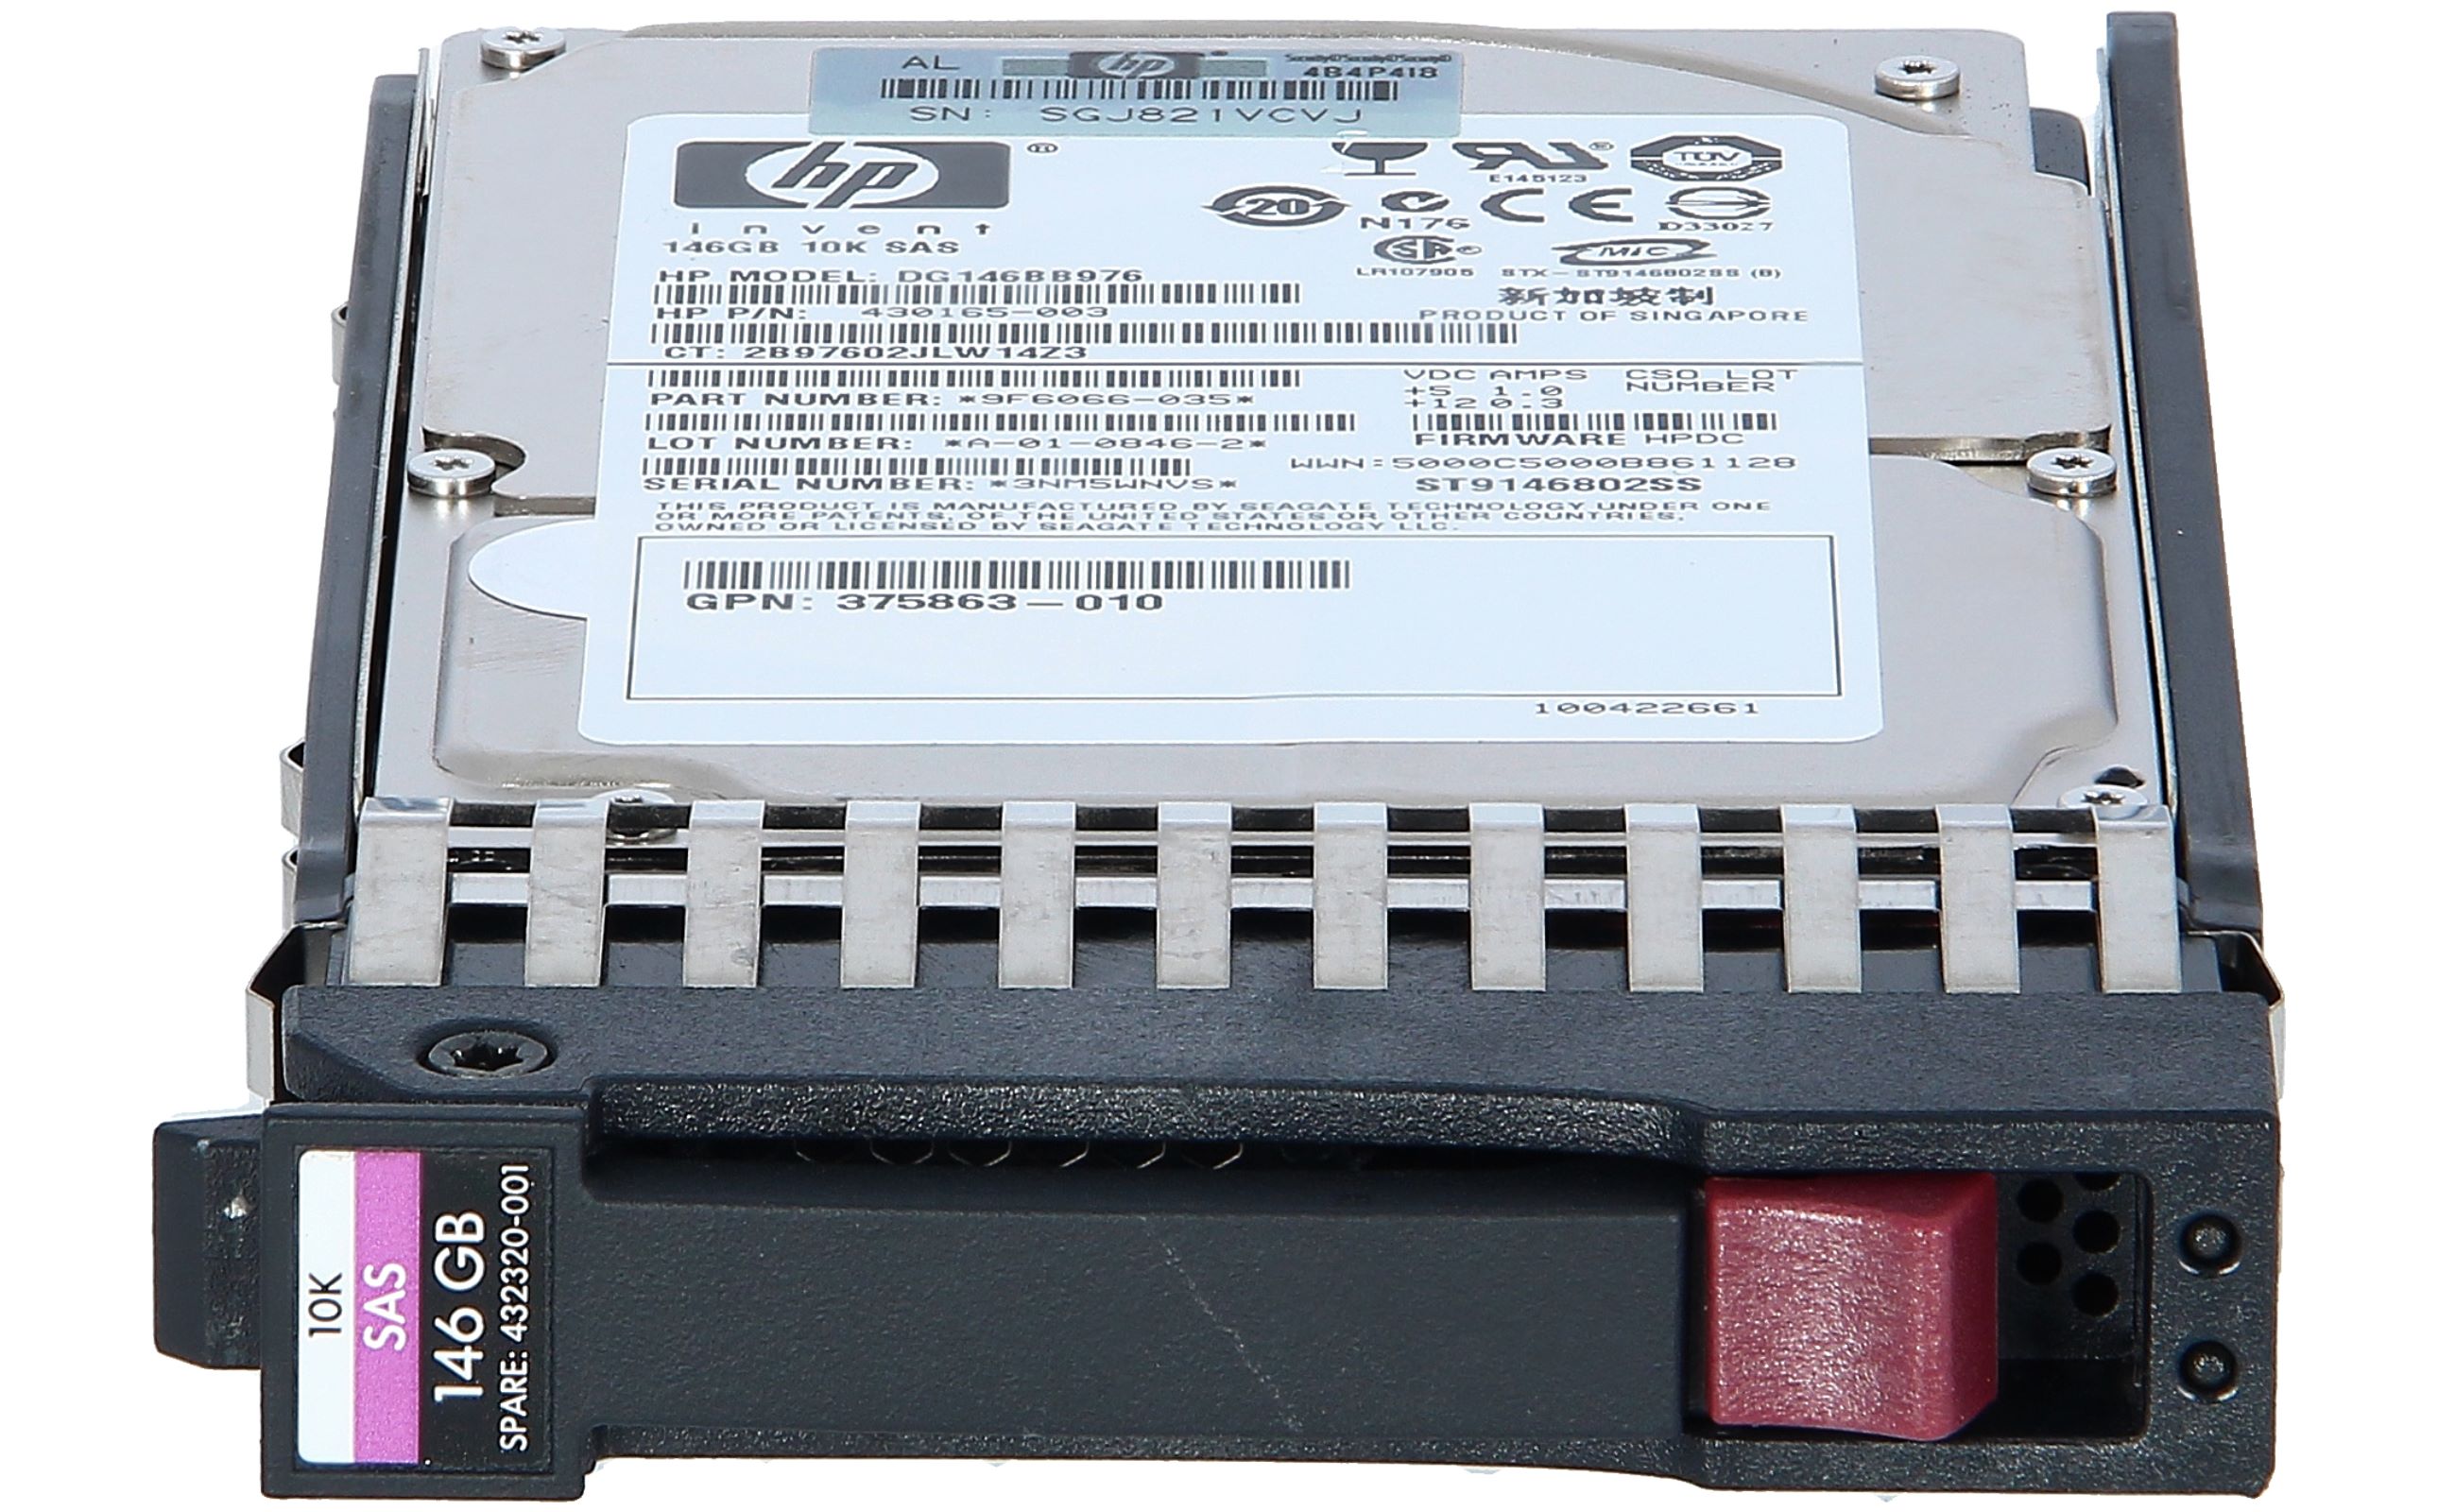 HP 418399-001 146GB 10K 2.5" 6GB SAS Hard Drive lot of 8 HDD"s 